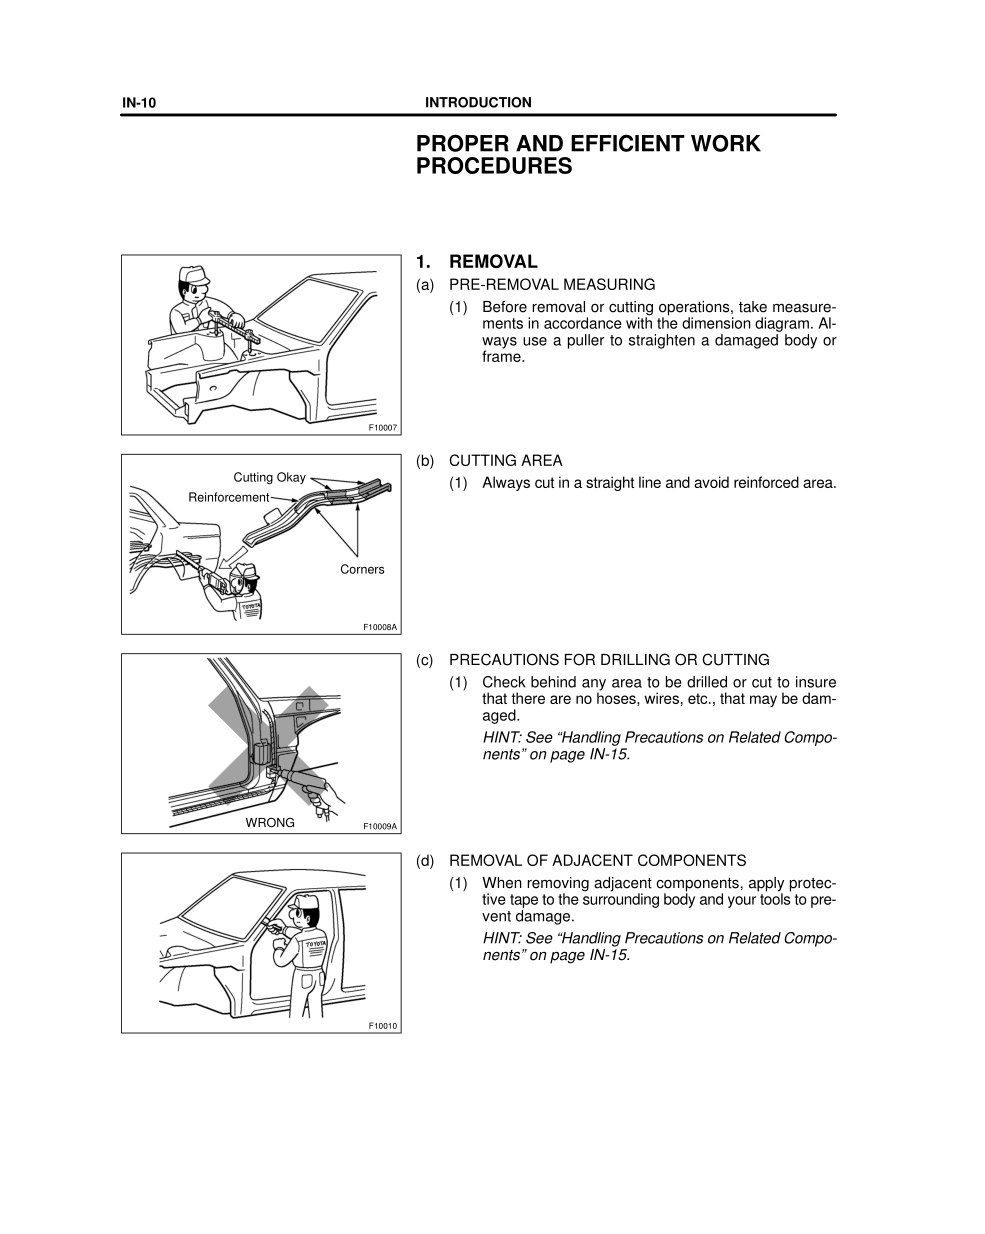 PreView of : 2003-2008 TOYOTA 4Runner Repair Manual, Proper And Efficient Work Procedures-carownersmanuals2.com